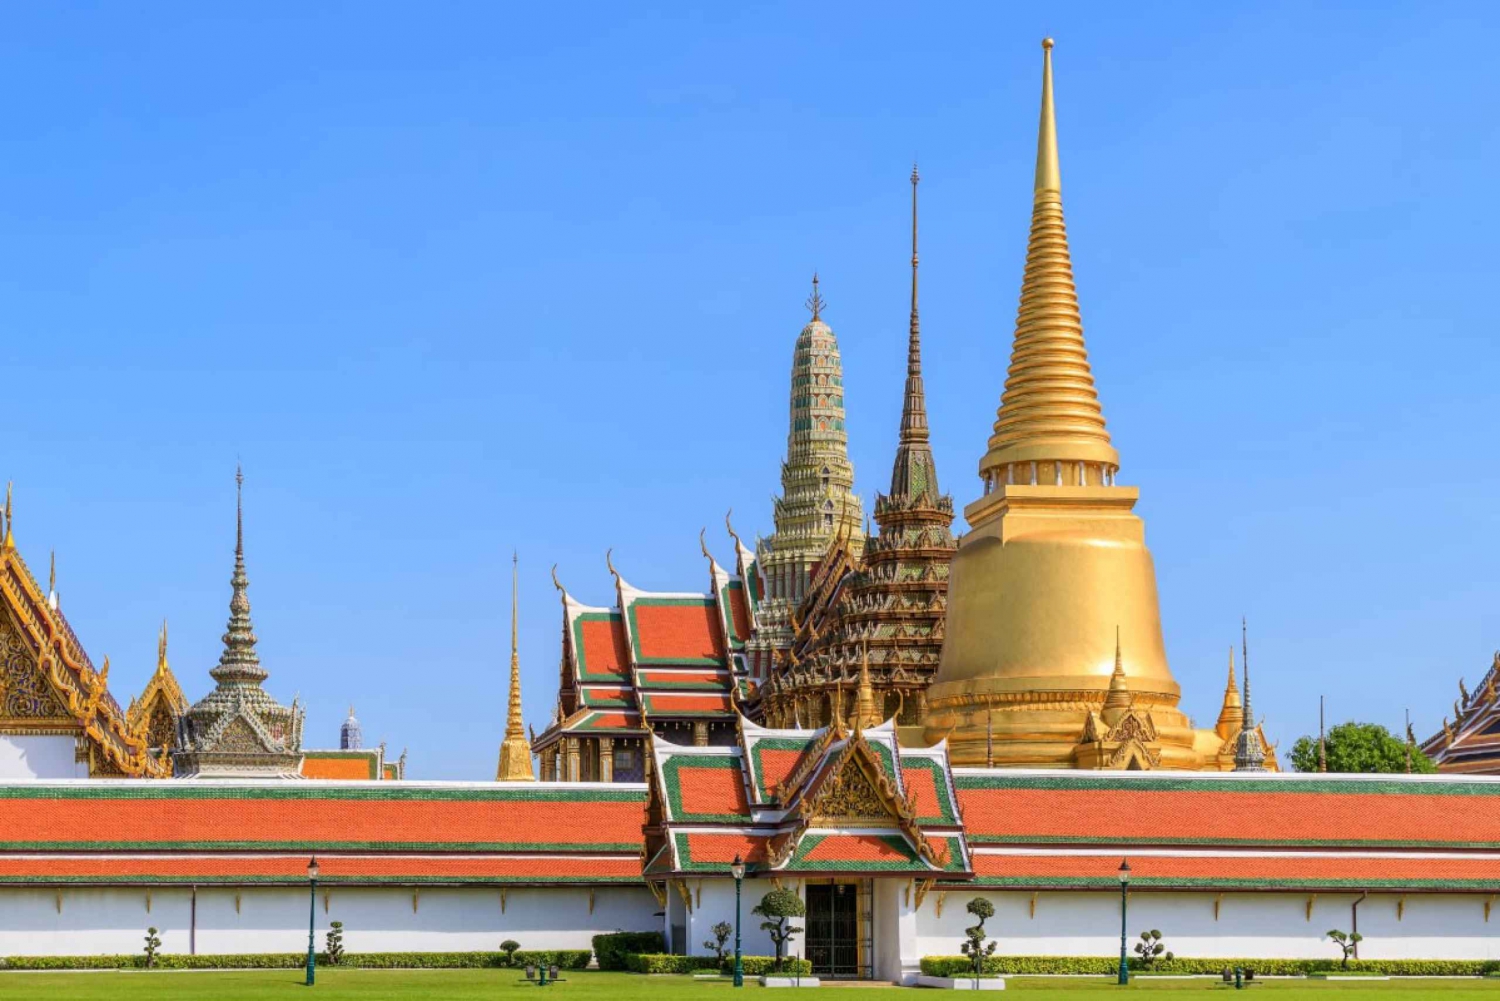 Bangkok: Grand Palace,Wat Pho,Wat Arun Walking Tour